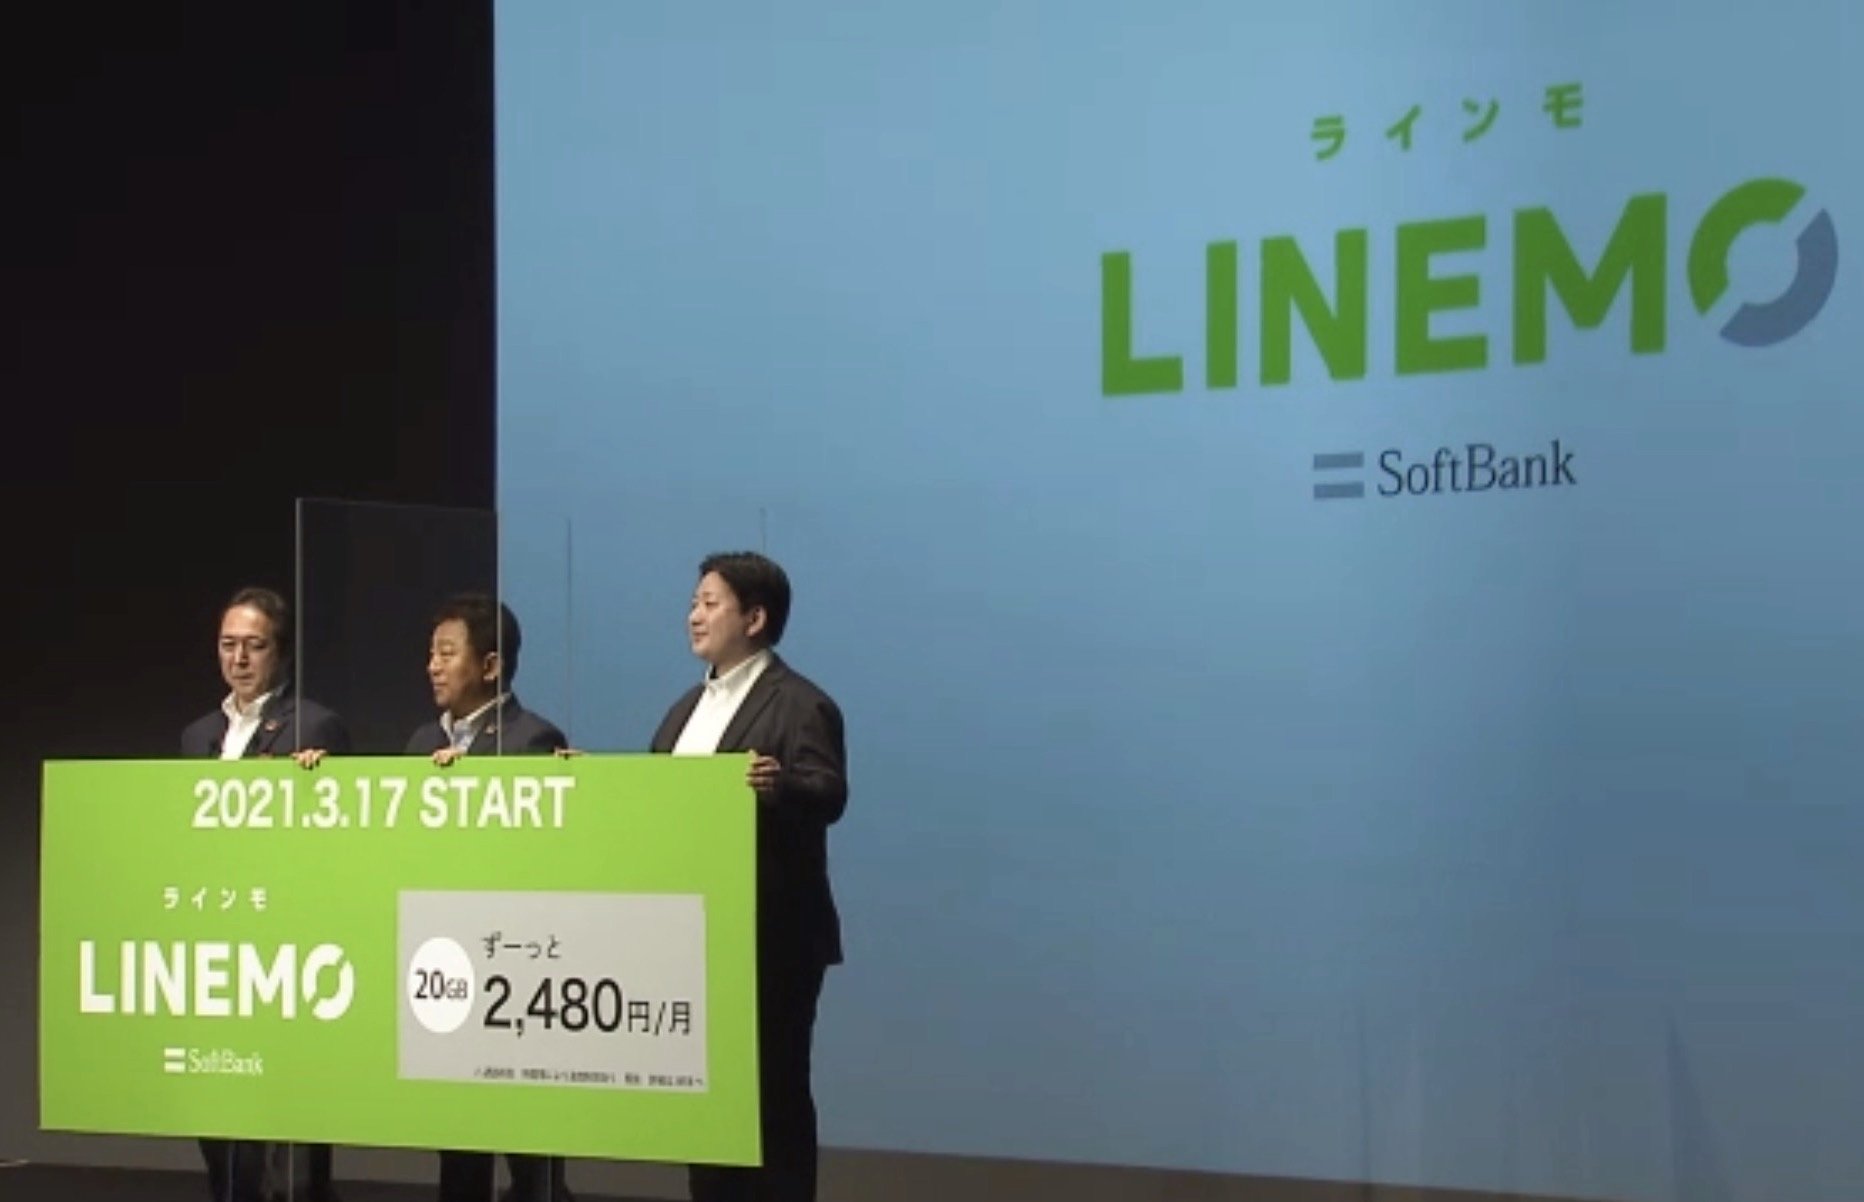 ソフトバンクの新ブランドはLINEMO　音声定額外し2480円に